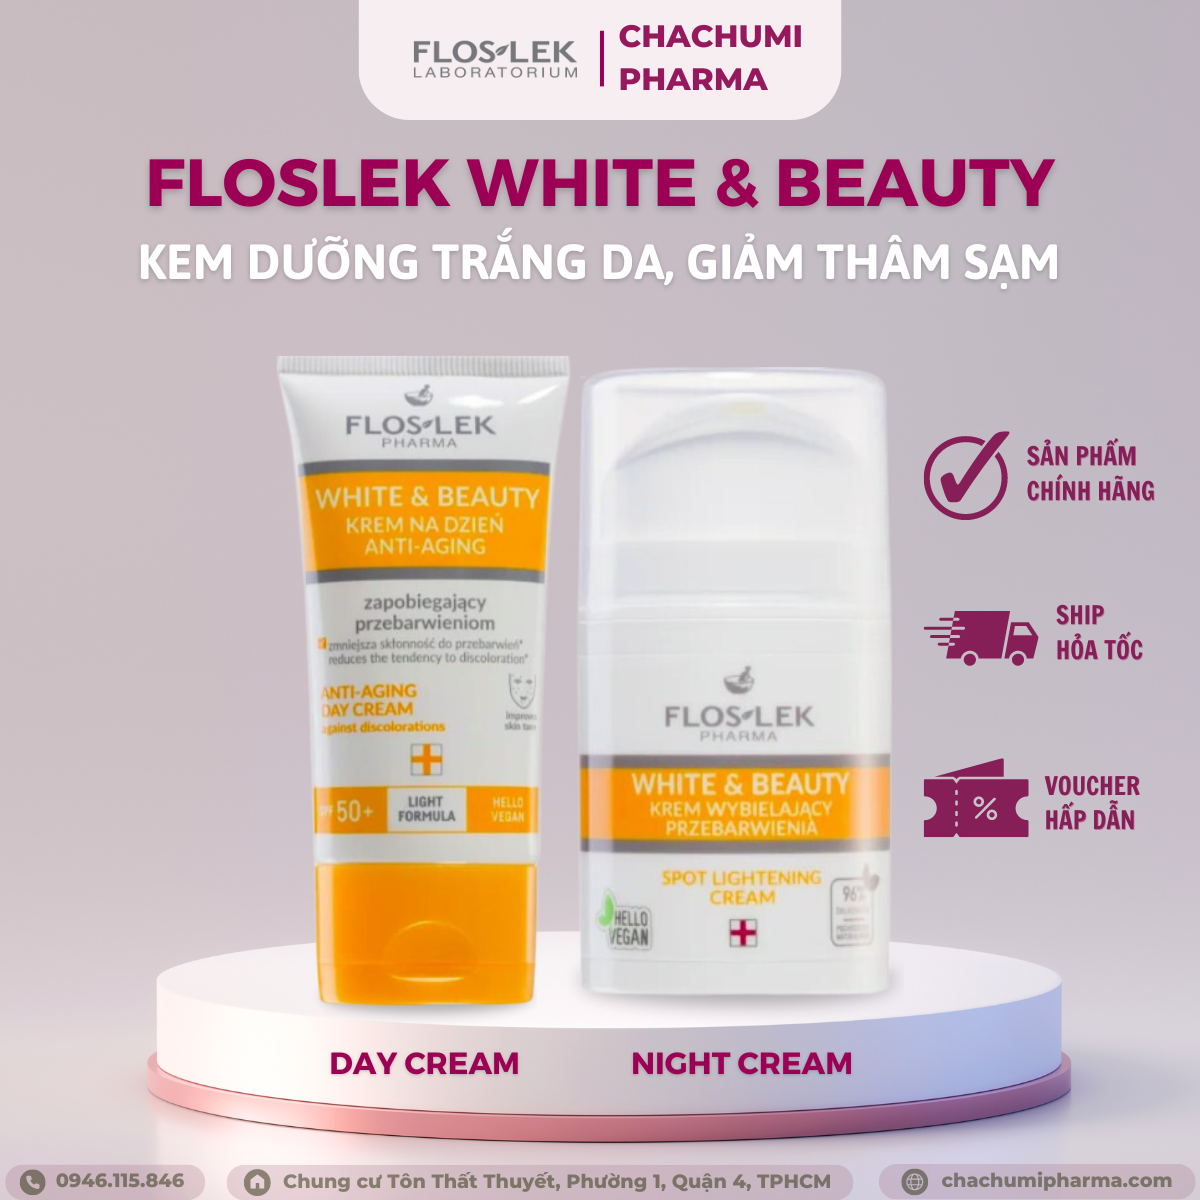 [TPHCM] Kem dưỡng Floslek trắng da, giảm thâm sạm nám White &amp; Beauty